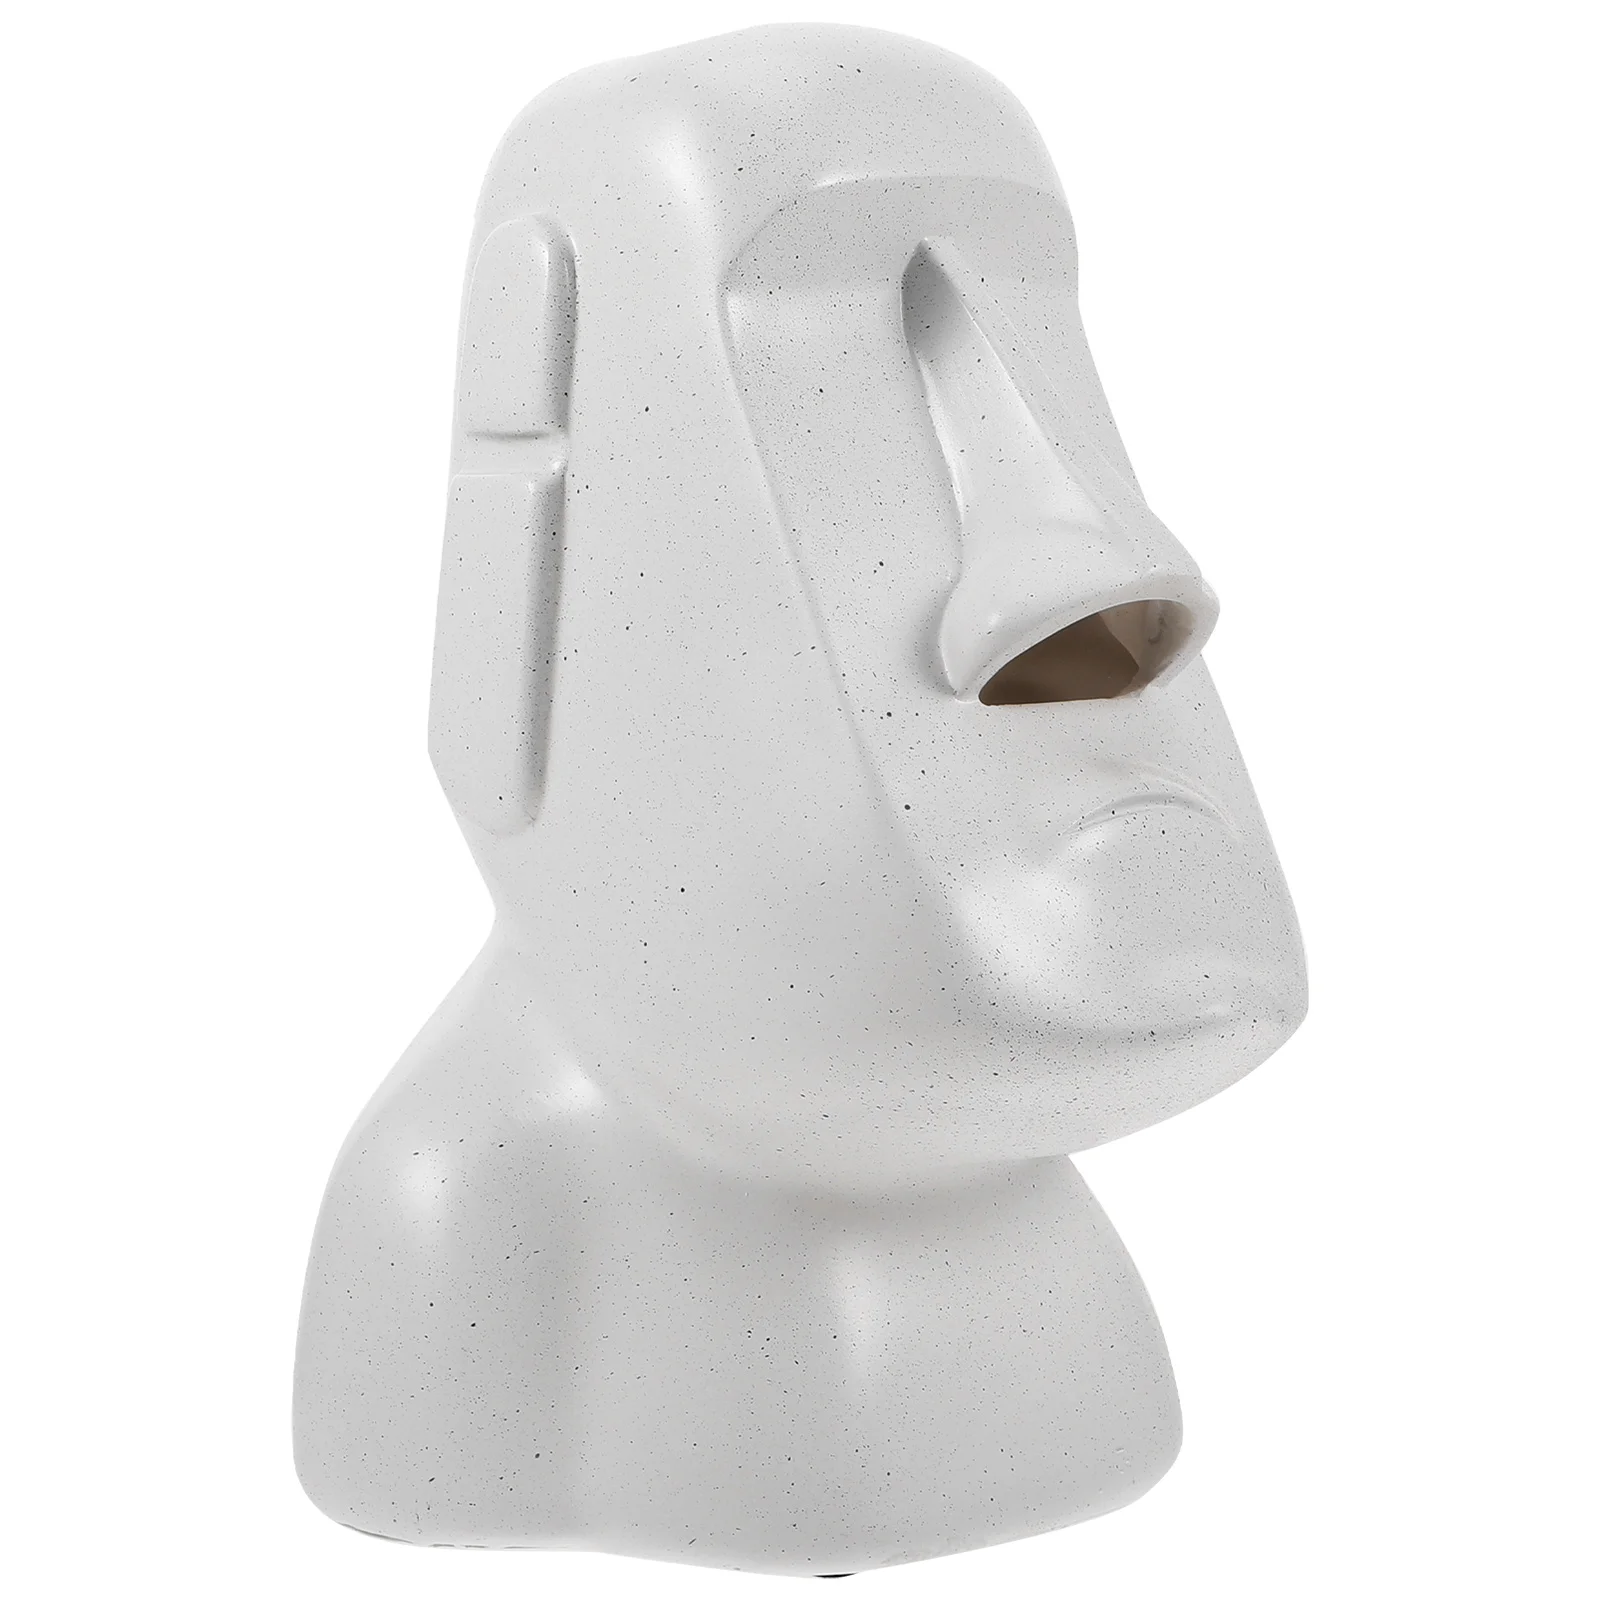 

Держатель для салфеток Moai, статуэтка, ткань, искусственная бумажная салфетка, Новый Диспенсер, искусственная смола